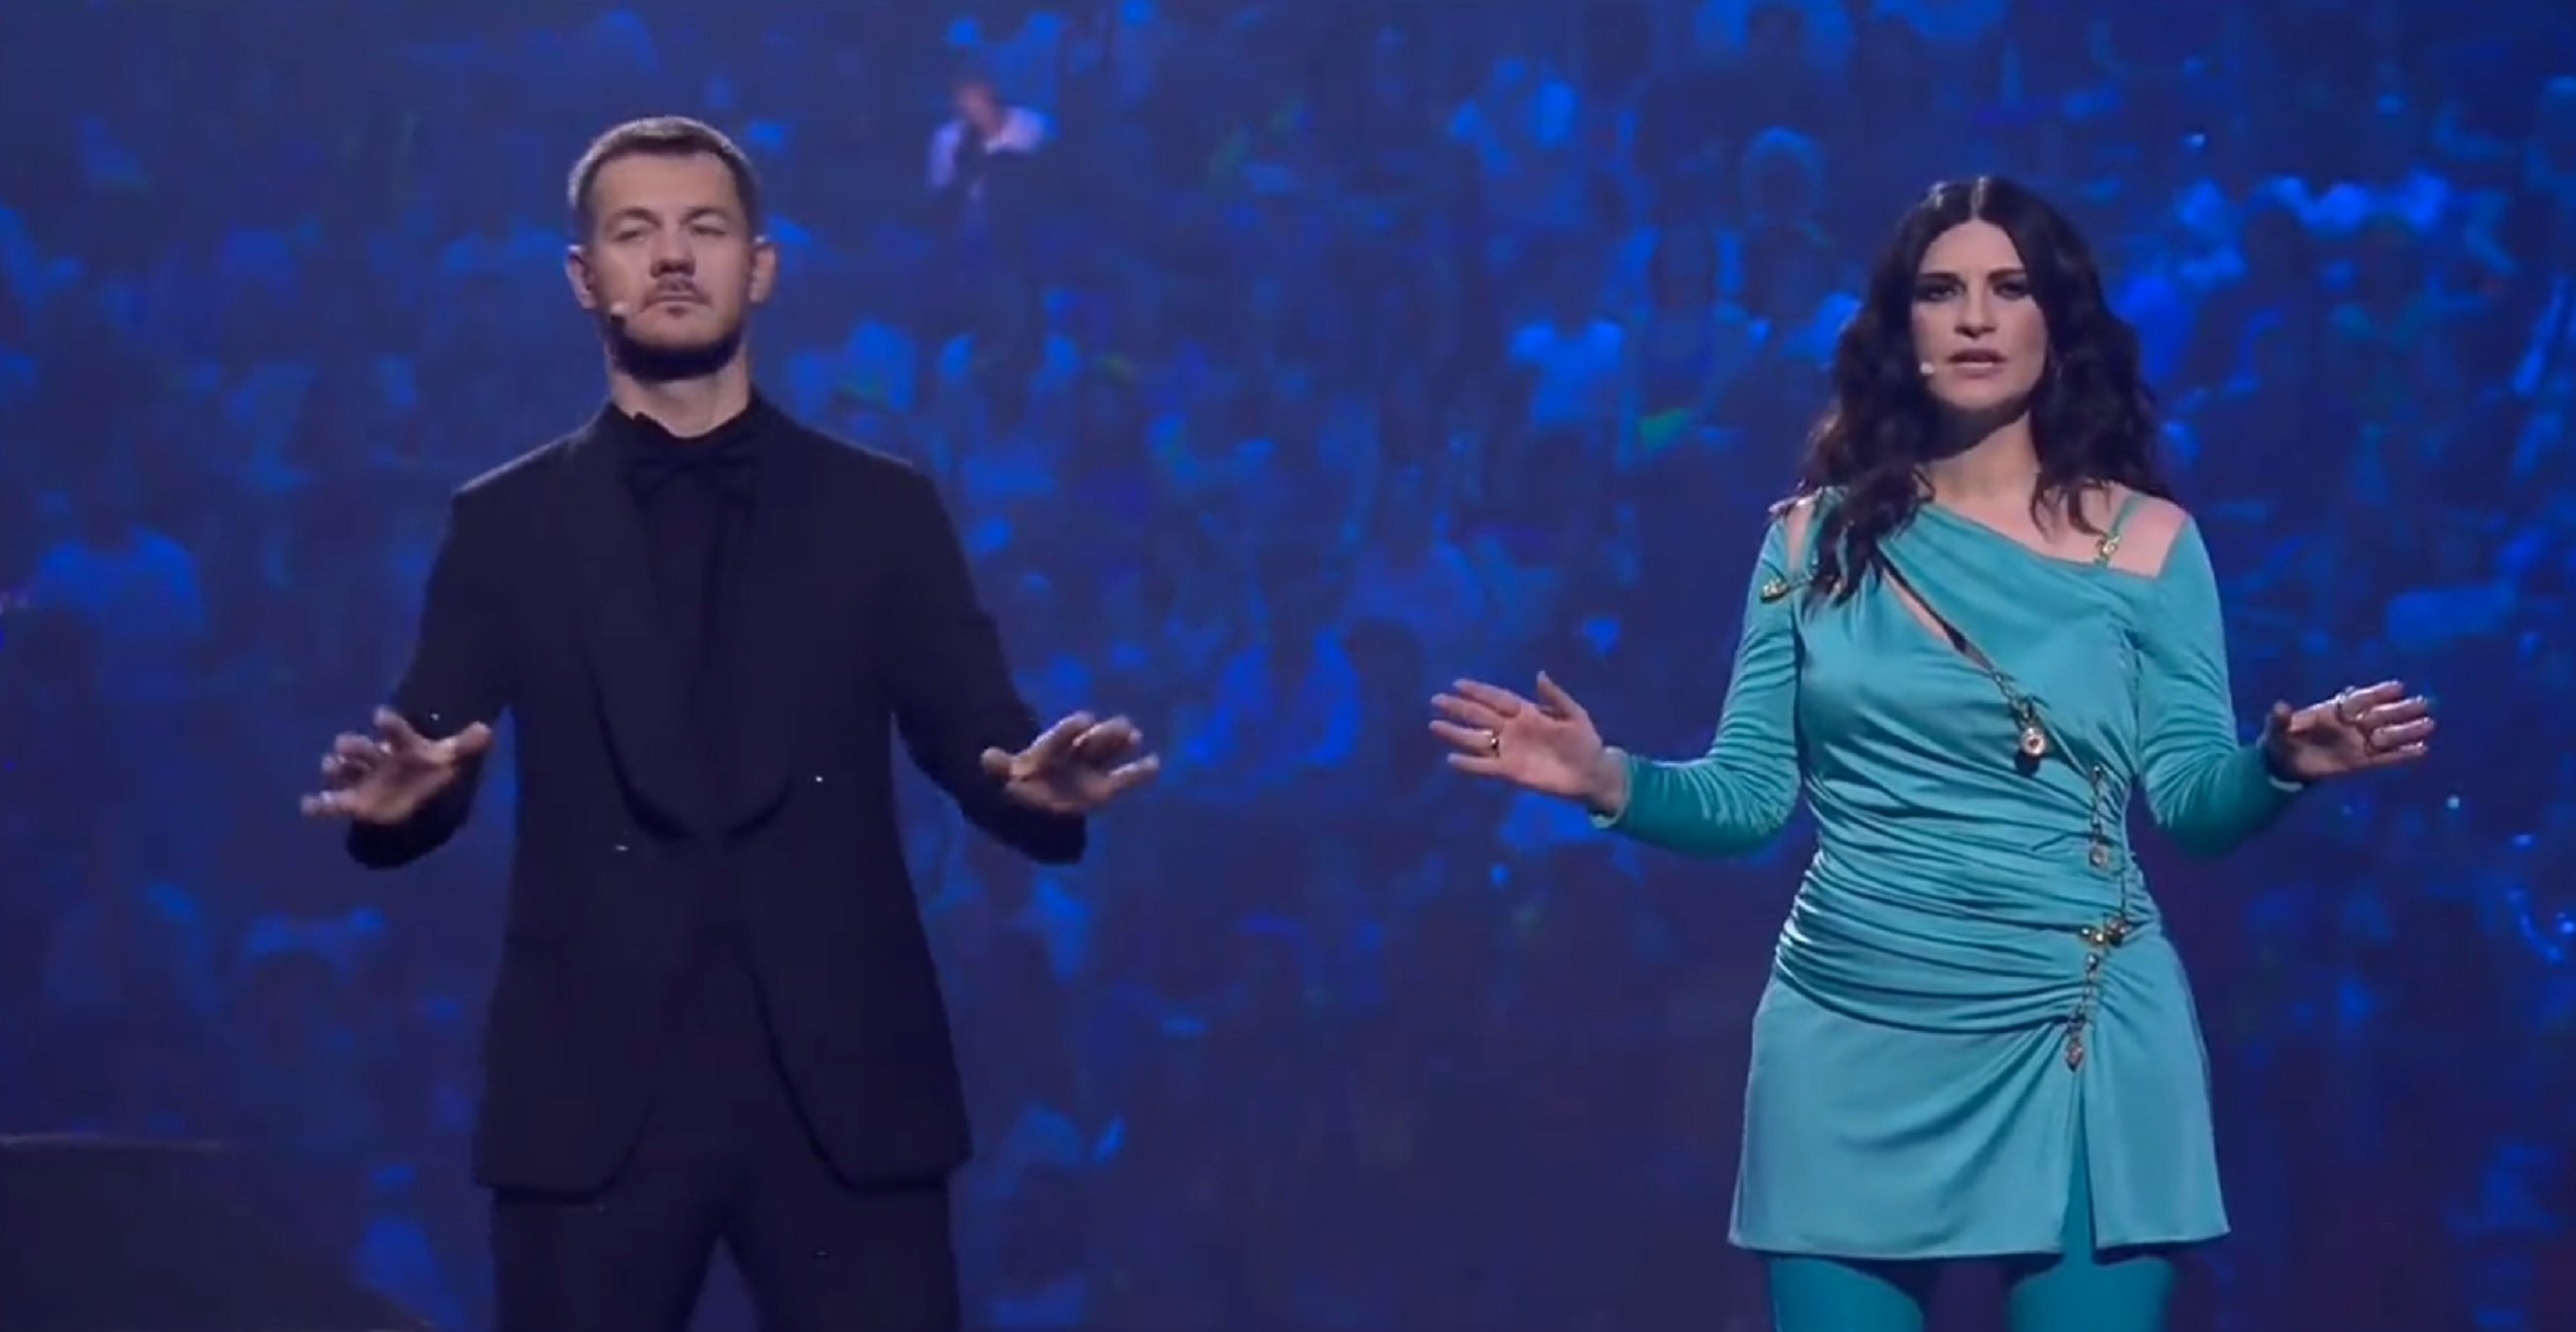 Una estelada se cuela en Eurovisión en un momento muy político: qué país estaba actuando